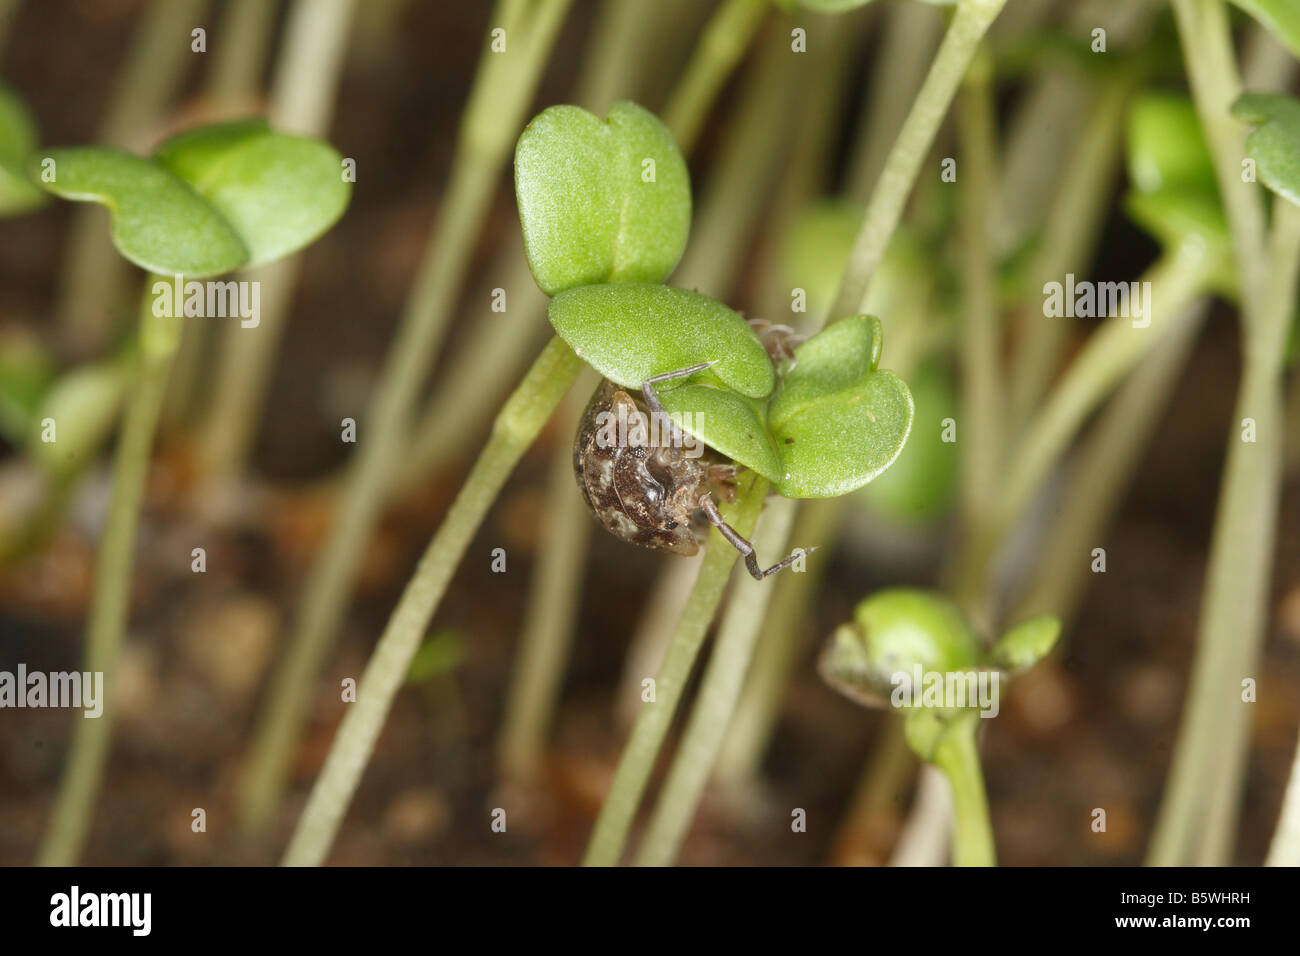 Oniscus asellus pou de bois se nourrissant sur des plantules en germination DANS LA NUIT Banque D'Images